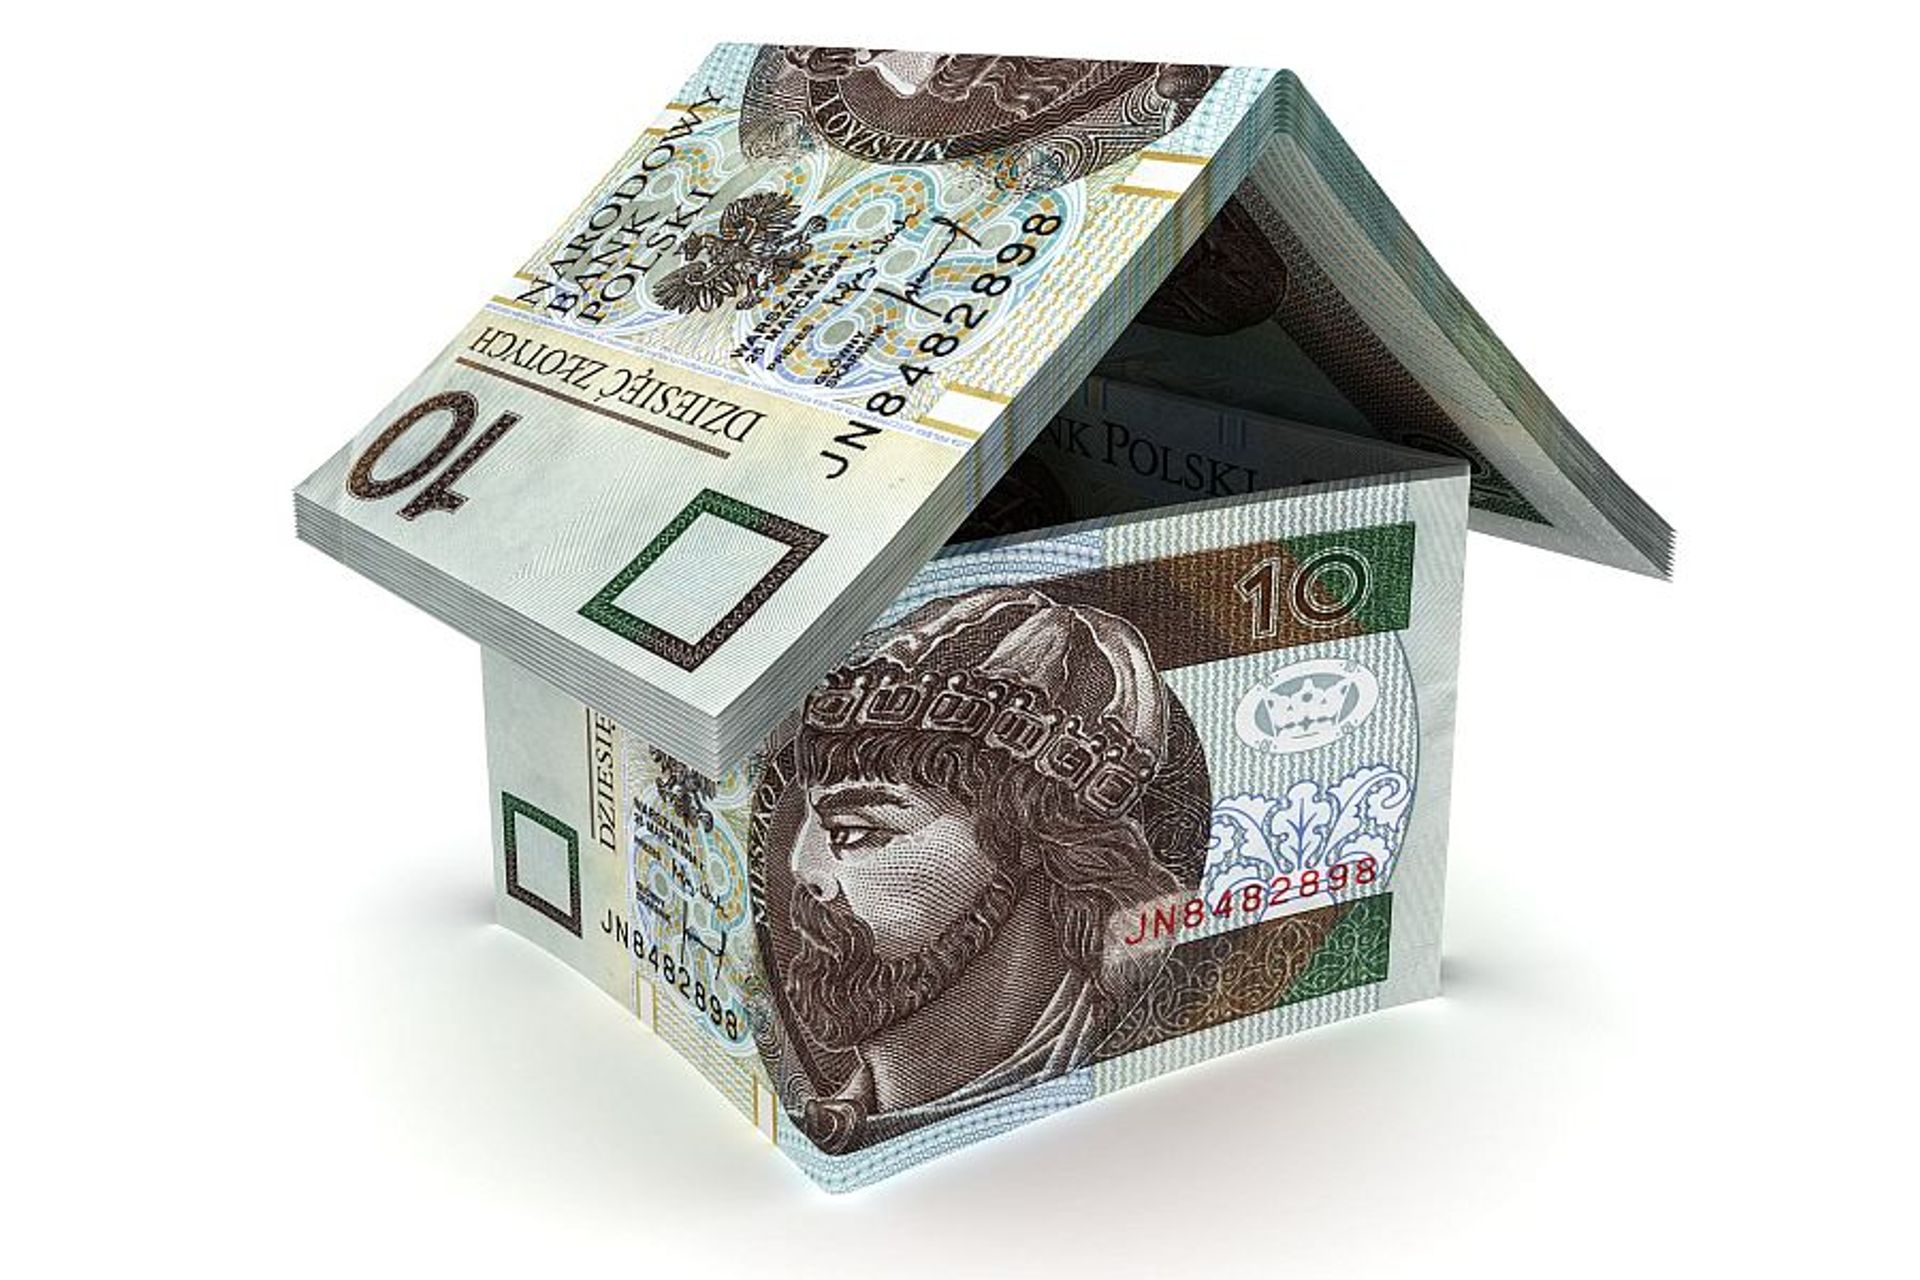  Jak szybko uzyskać kredyt hipoteczny?